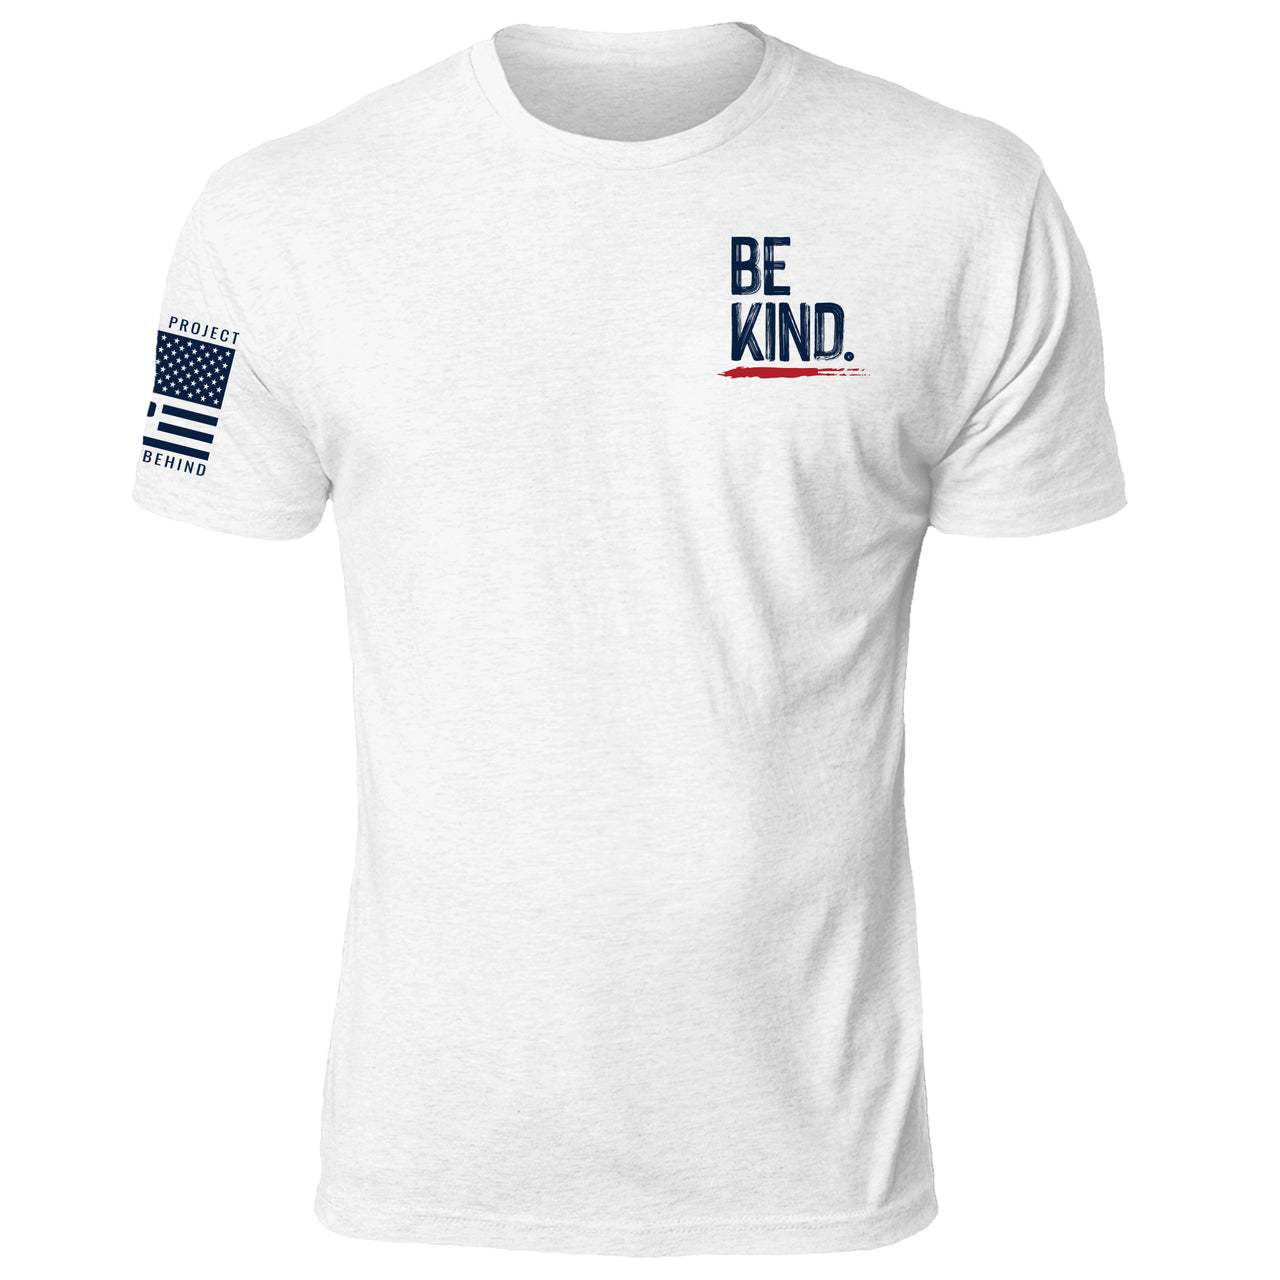 Be Kind Shirt Be Kind Be Kind T-shirt Be Kind Tee 